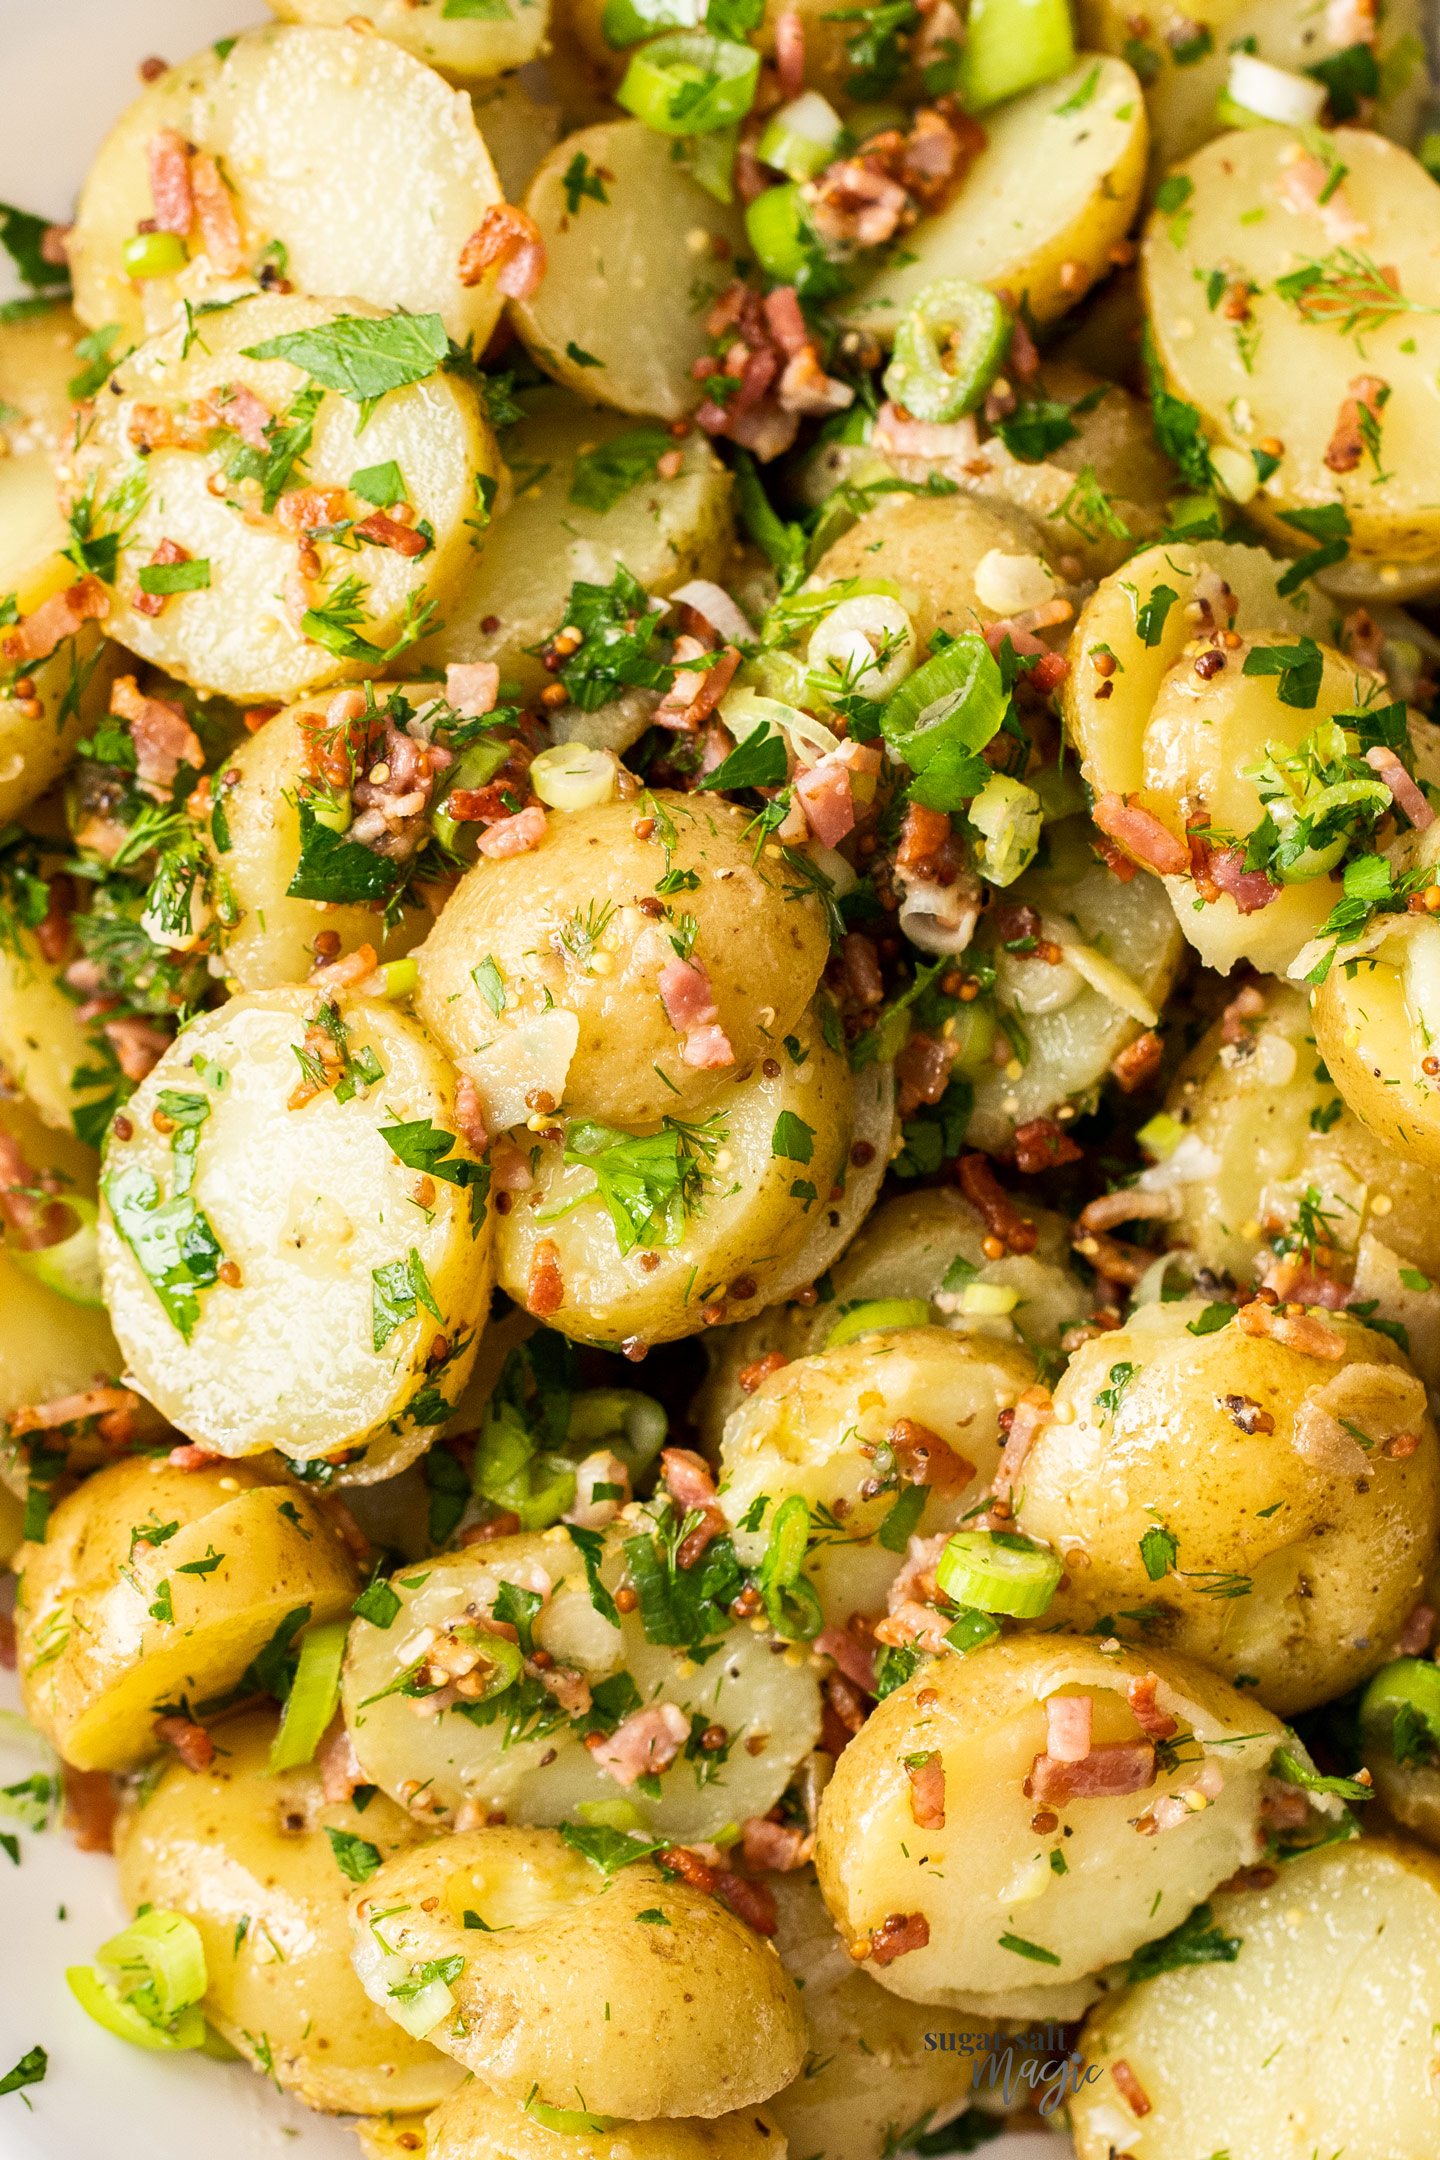 Closeup of potato salad.